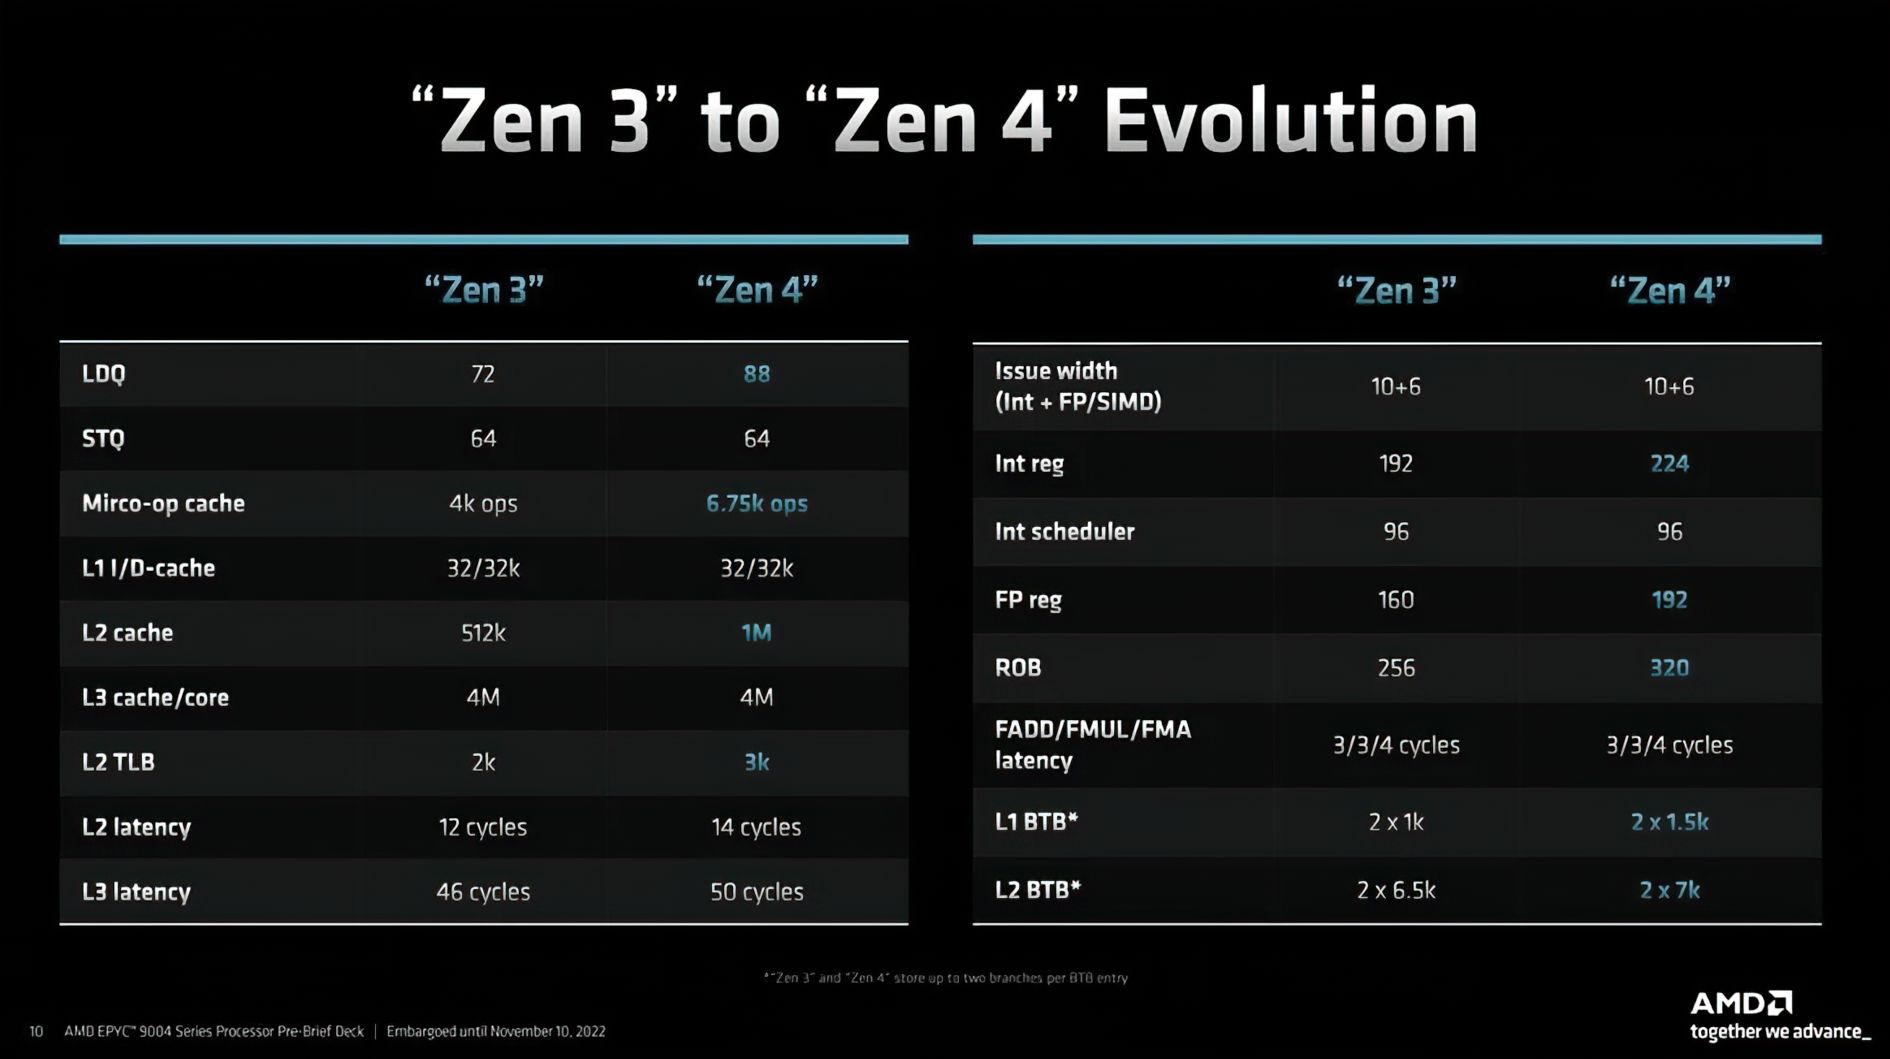 AMD-EPYC-GENOA-ZEN4-SLIDES-4.jpg